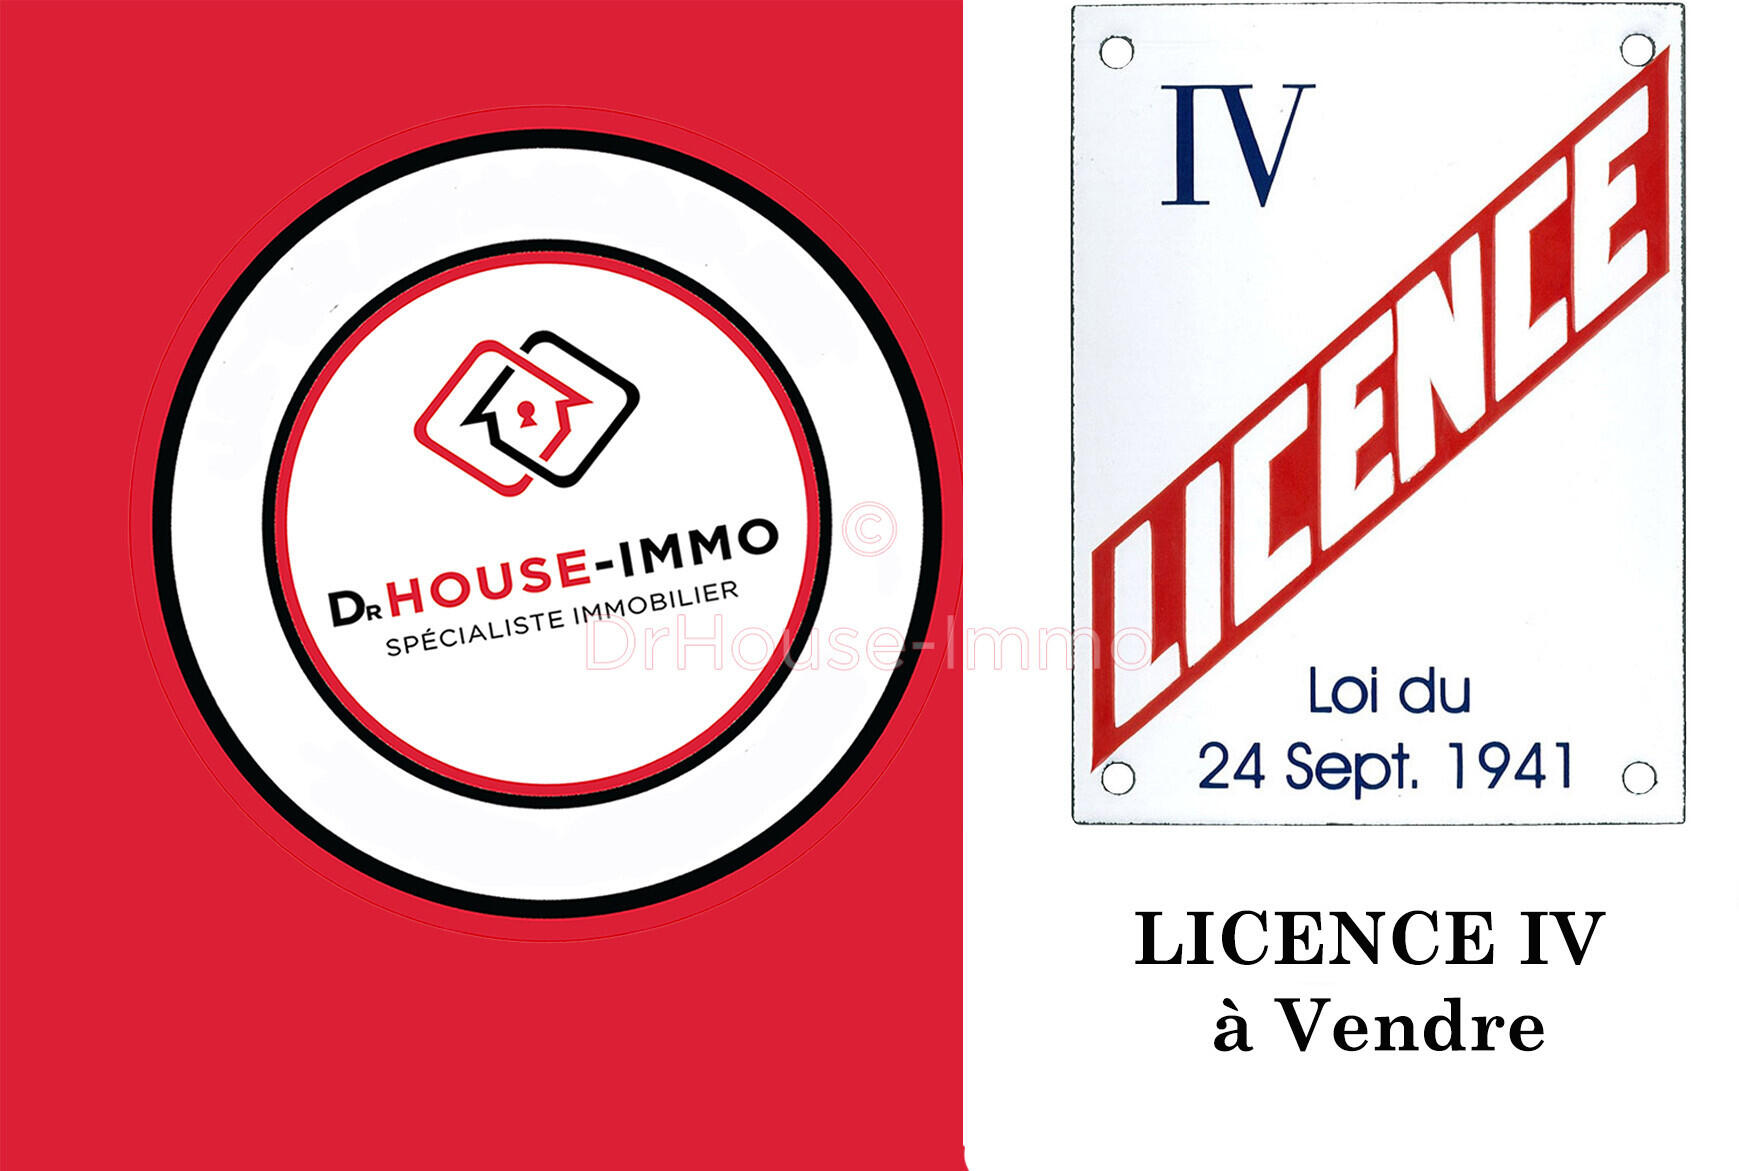 Vente licence IV transférable en Loire Atlantique